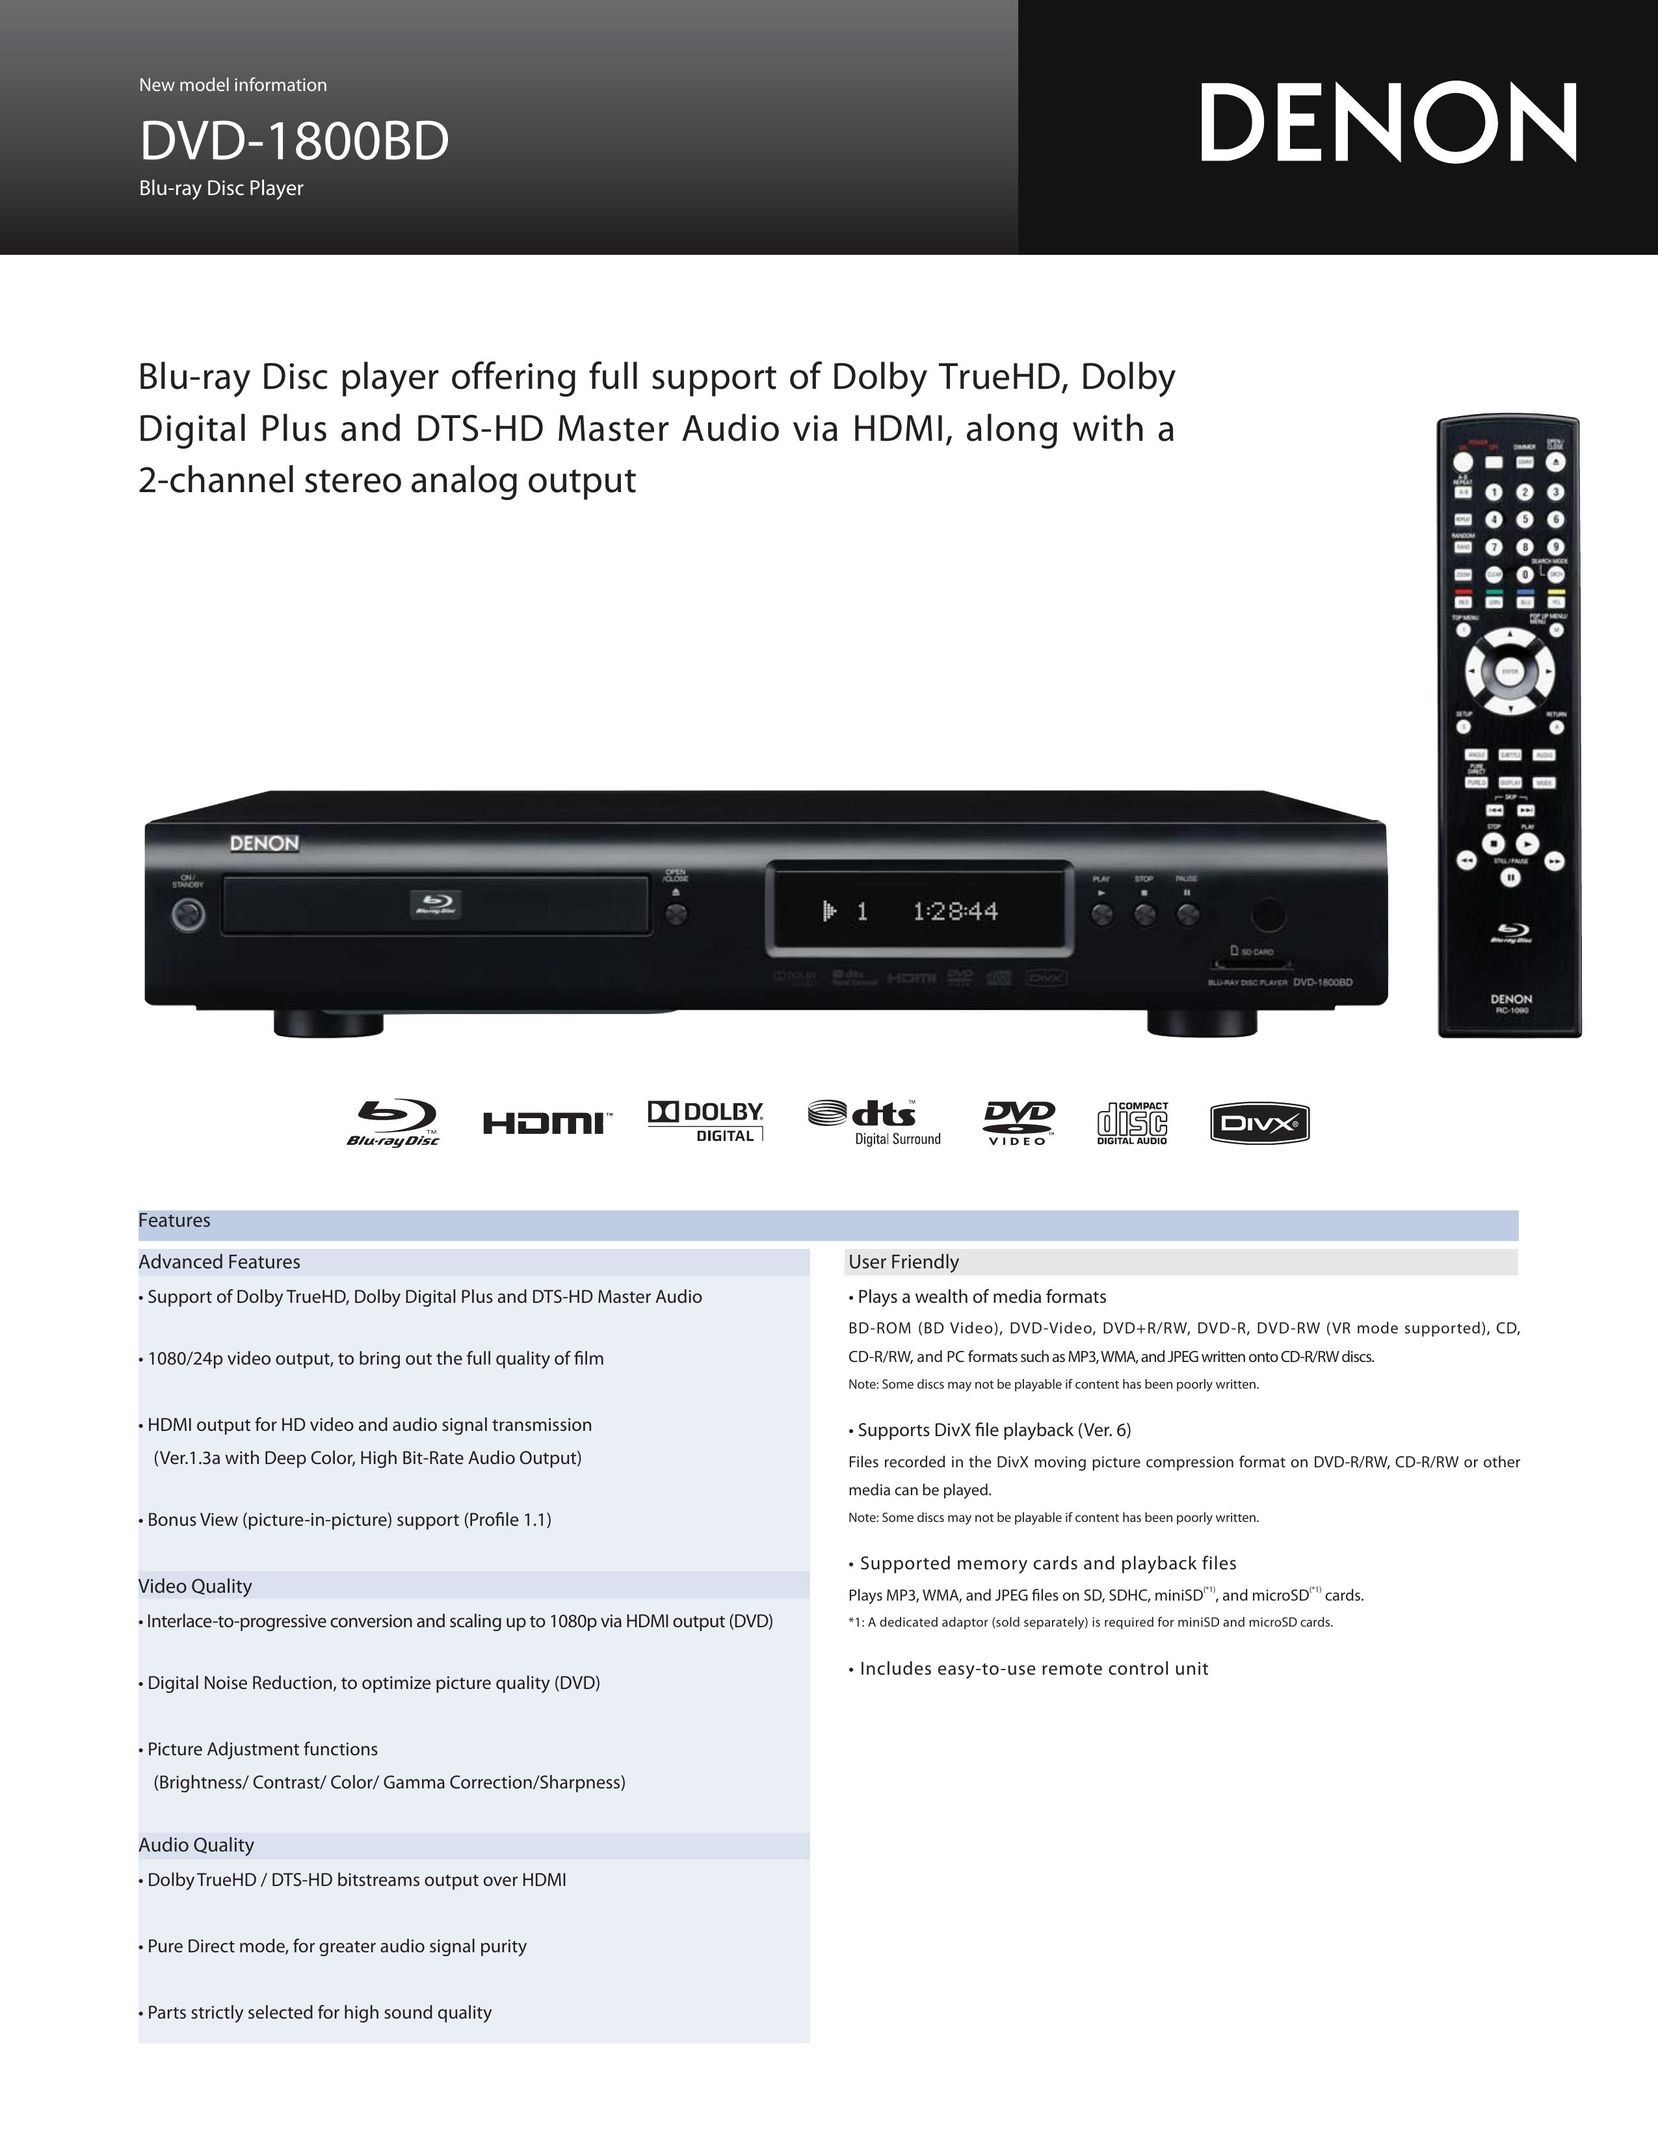 Denon DVD-1800BD Blu-ray Player User Manual (Page 1)